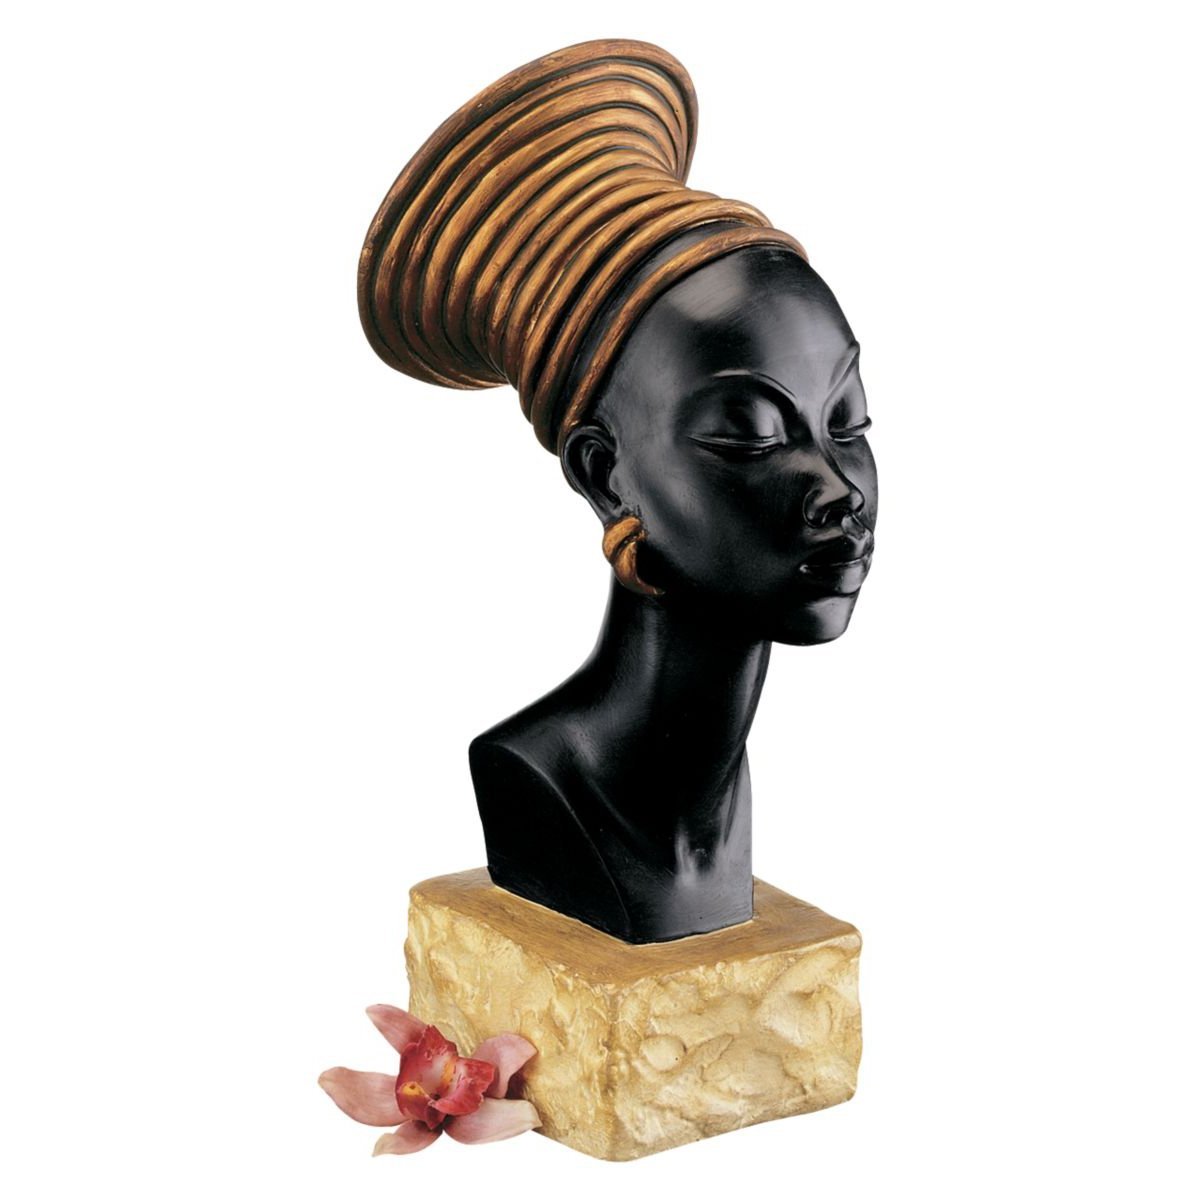 ヌビア人の女性胸像 アフリカインテリア彫刻置物オブジェ装飾品民族衣装エスニック家具女性オリエンタル雑貨調度品美術